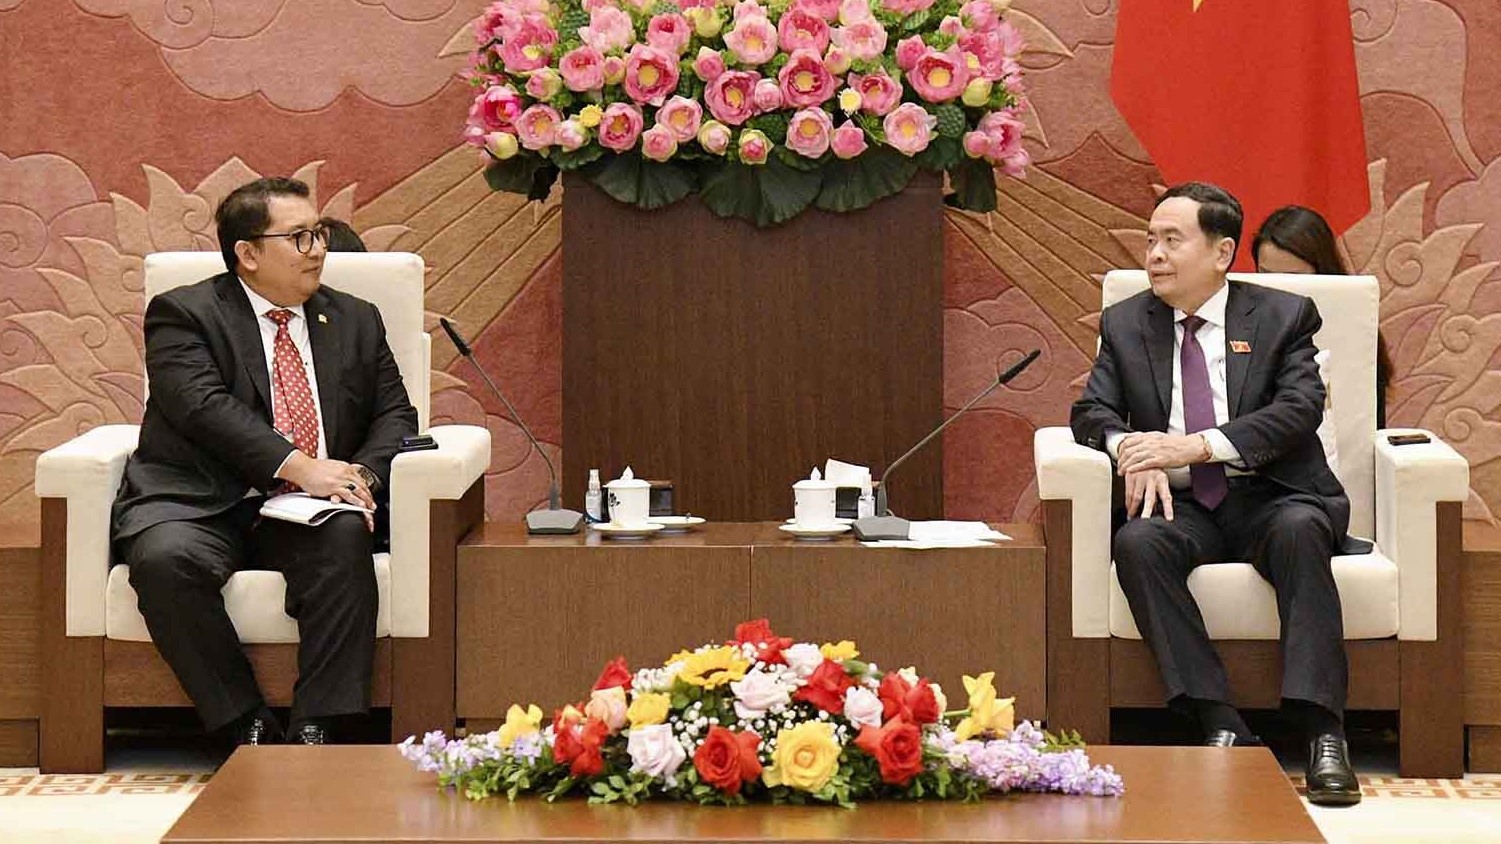 Hợp tác nghị viện tiếp tục góp phần thúc đẩy quan hệ Đối tác chiến lược Việt Nam-Indonesia